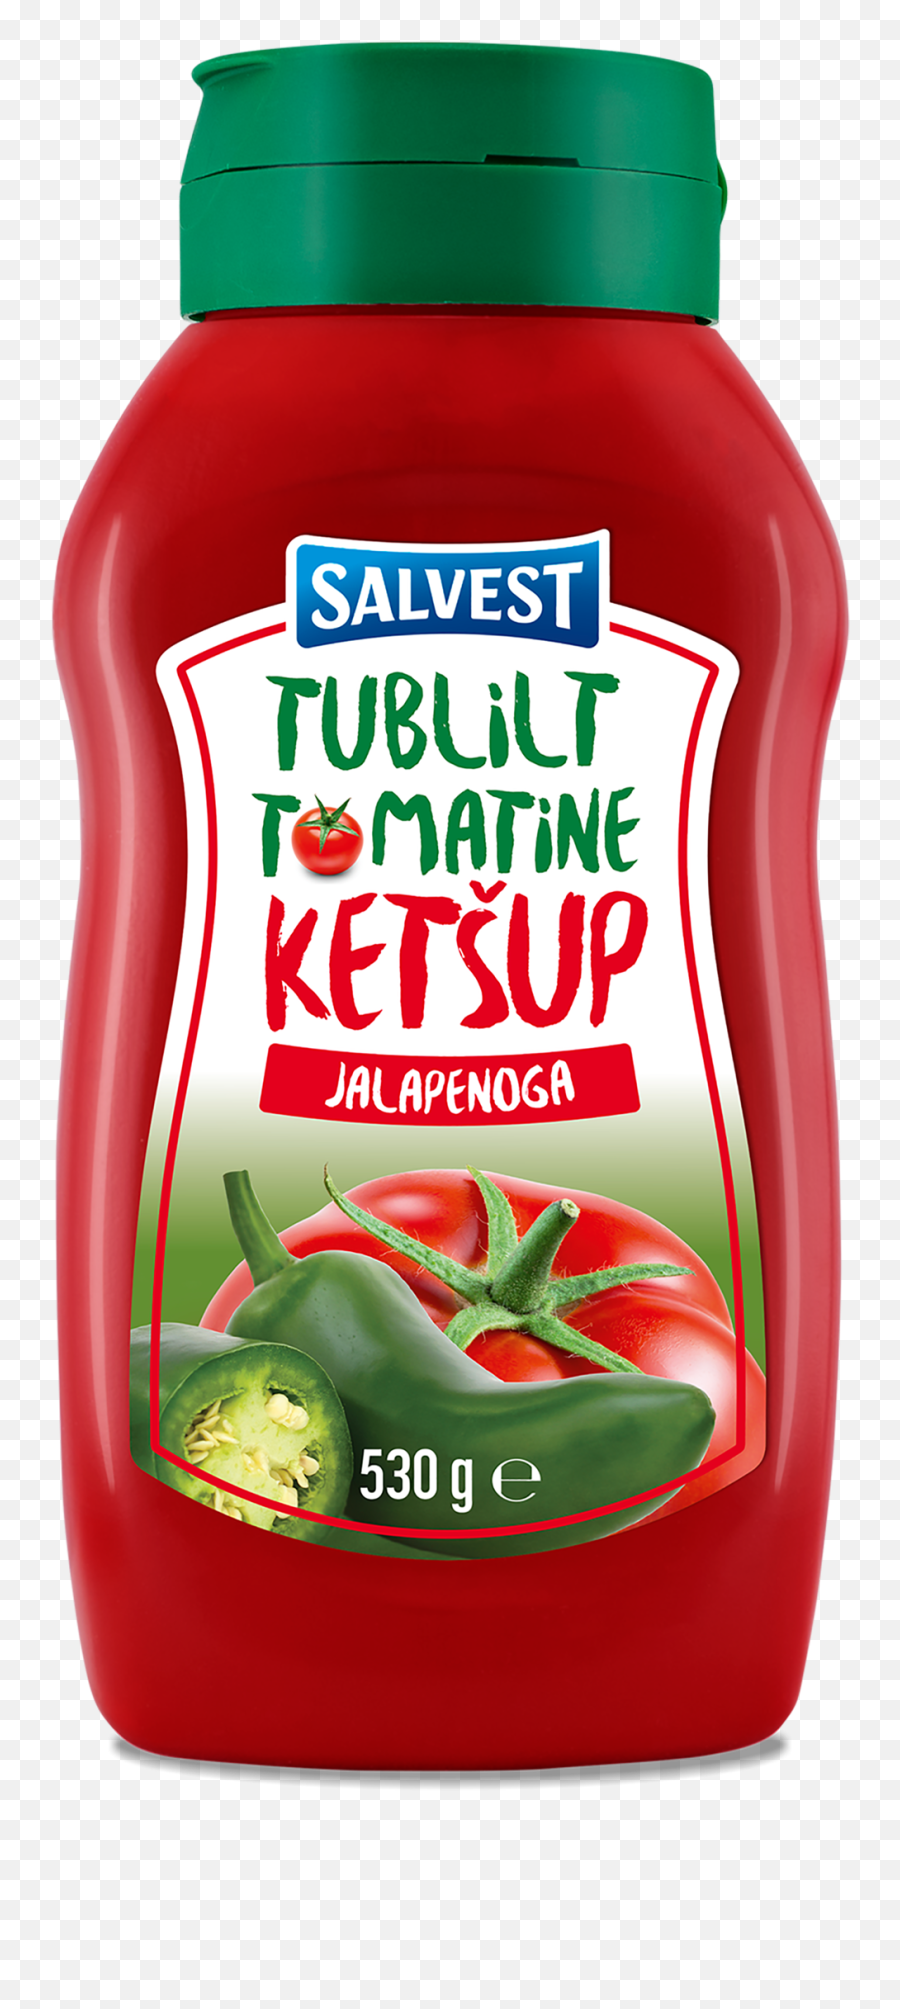 Salvest Jalapeno Ketchup 530g - Salvest Ketsup Png,Jalapeno Png